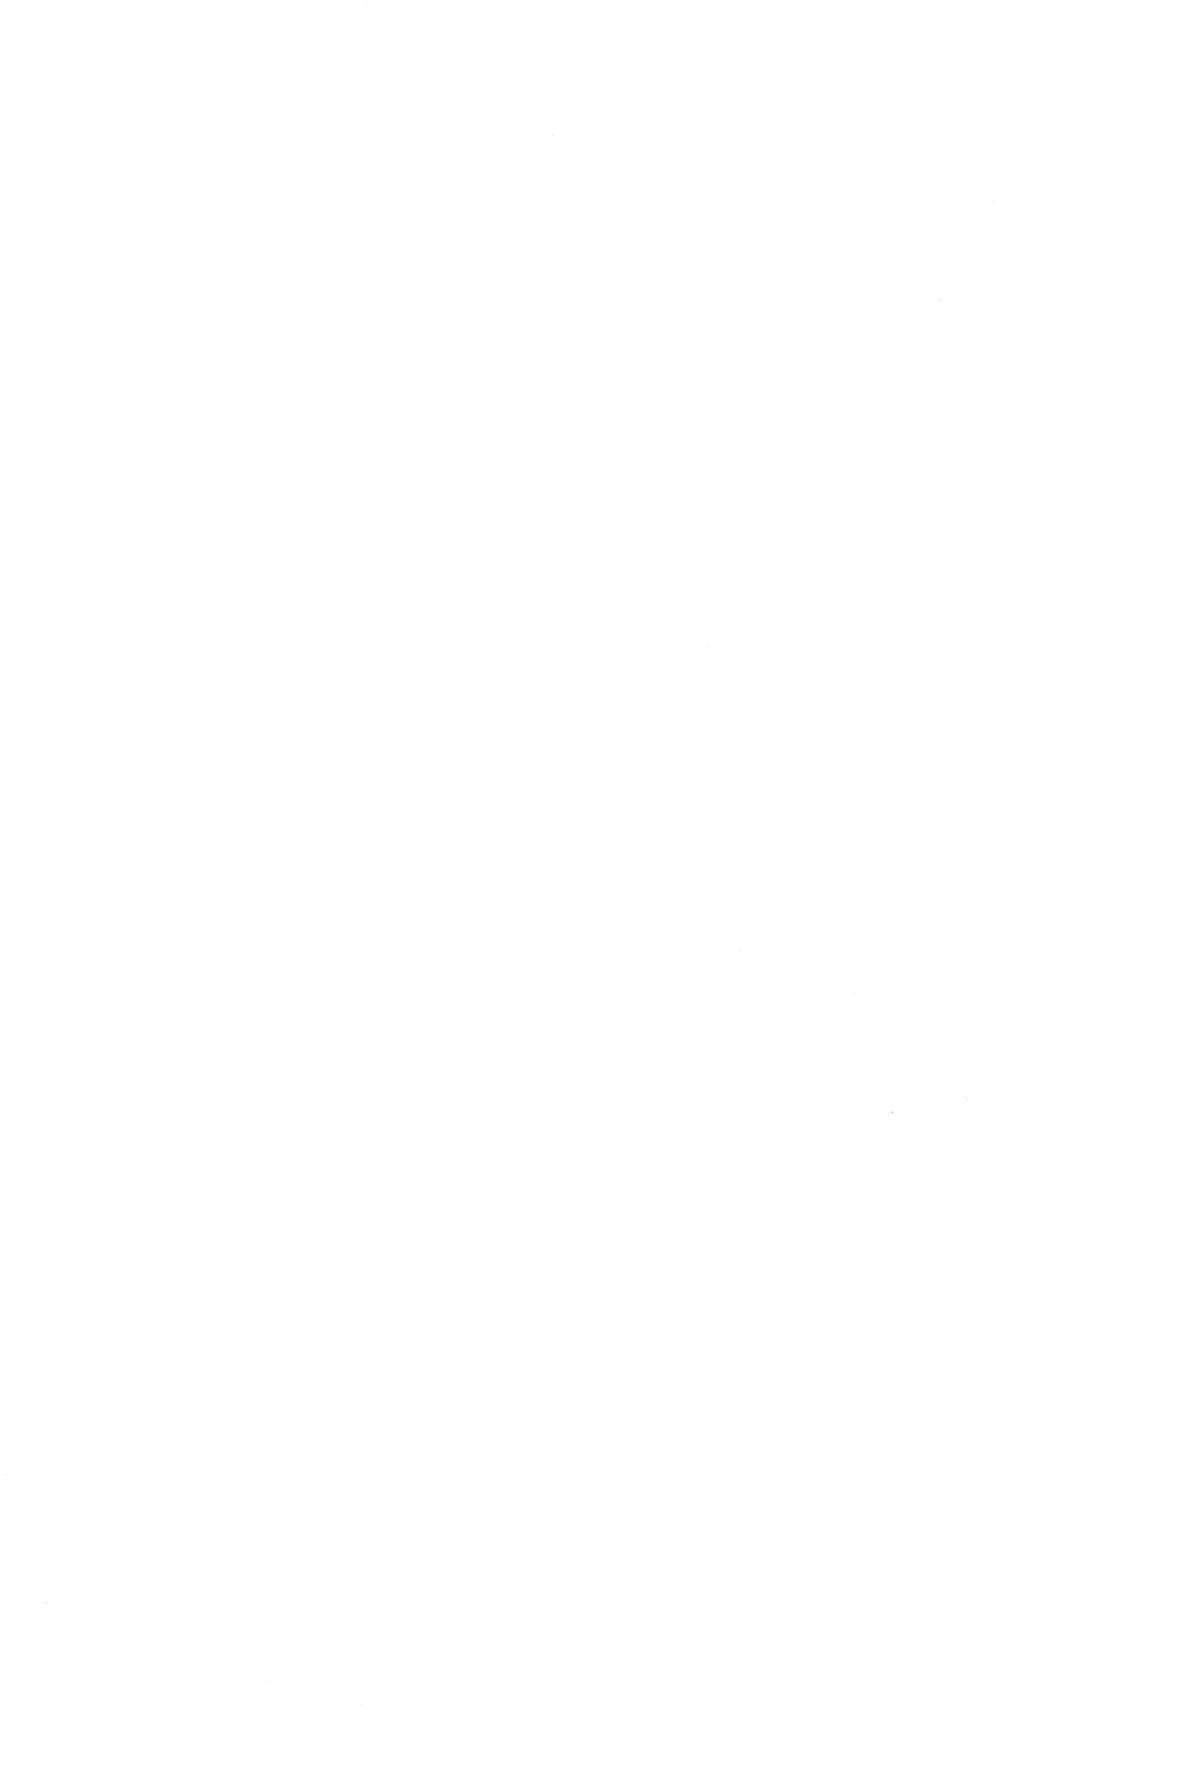 (C87) [アーカイブ (へち)] 哨戒セヨ! 日本領尖閣諸島～天安門で革命を (艦隊これくしょん -艦これ-)